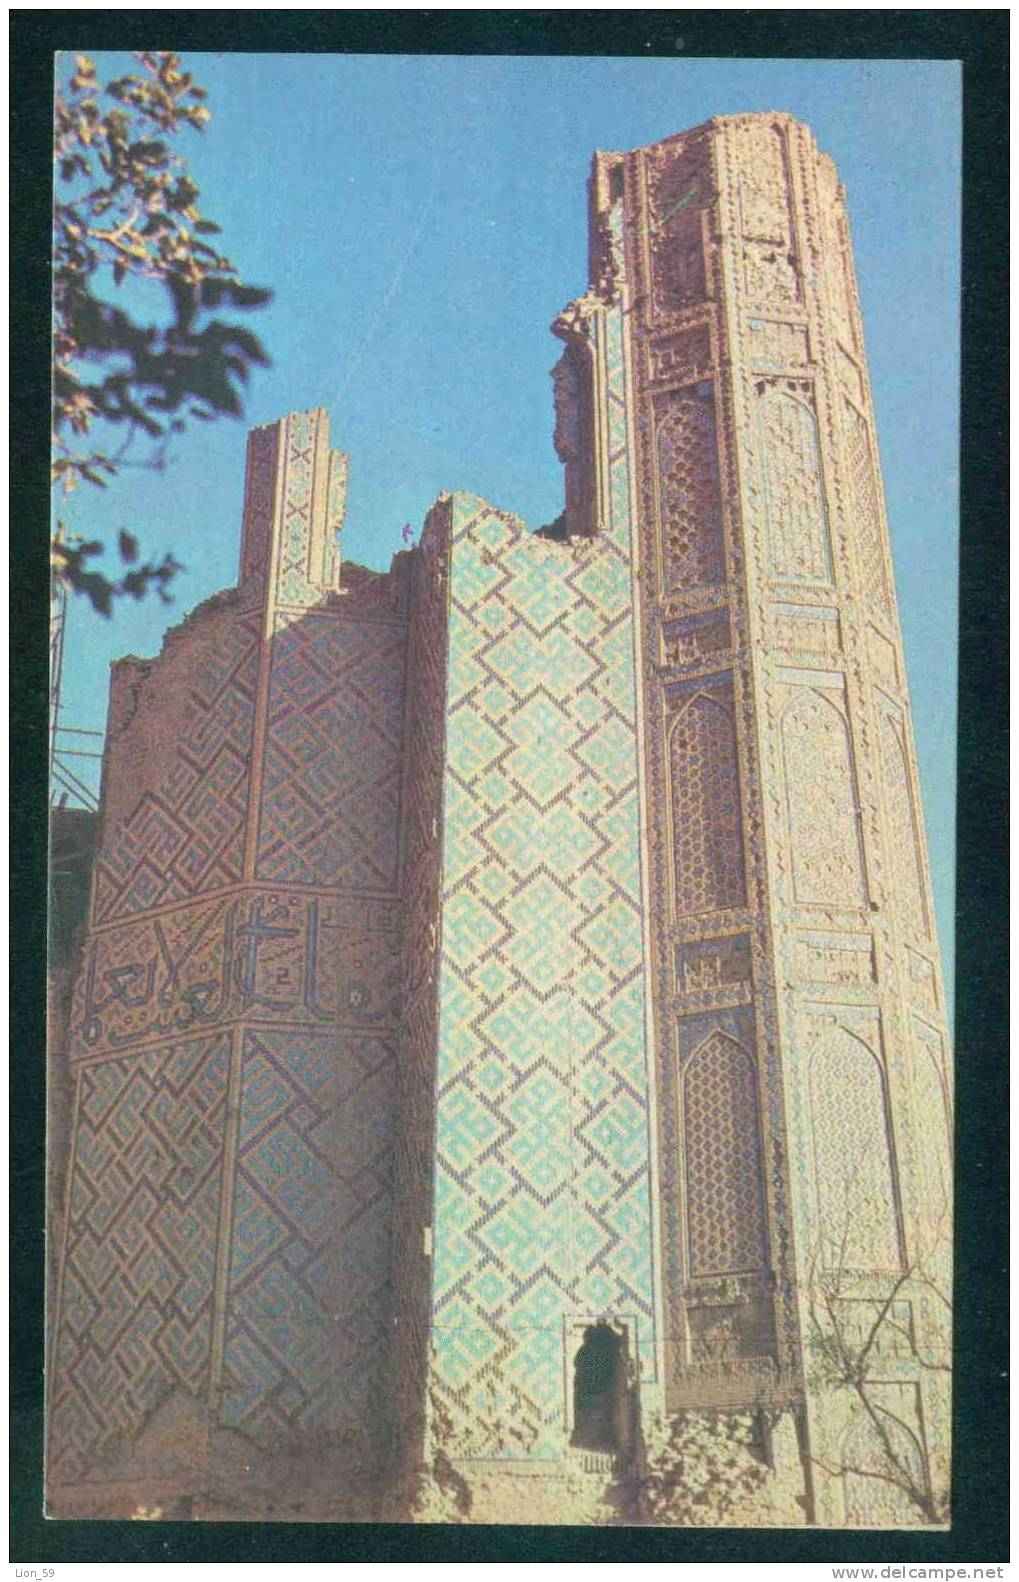 Samarkand / Samarcande - BIBIKHANYM / A FRAGMENT OF THE PORTAL / - Uzbekistan Ouzbékistan 108102 - Uzbekistan